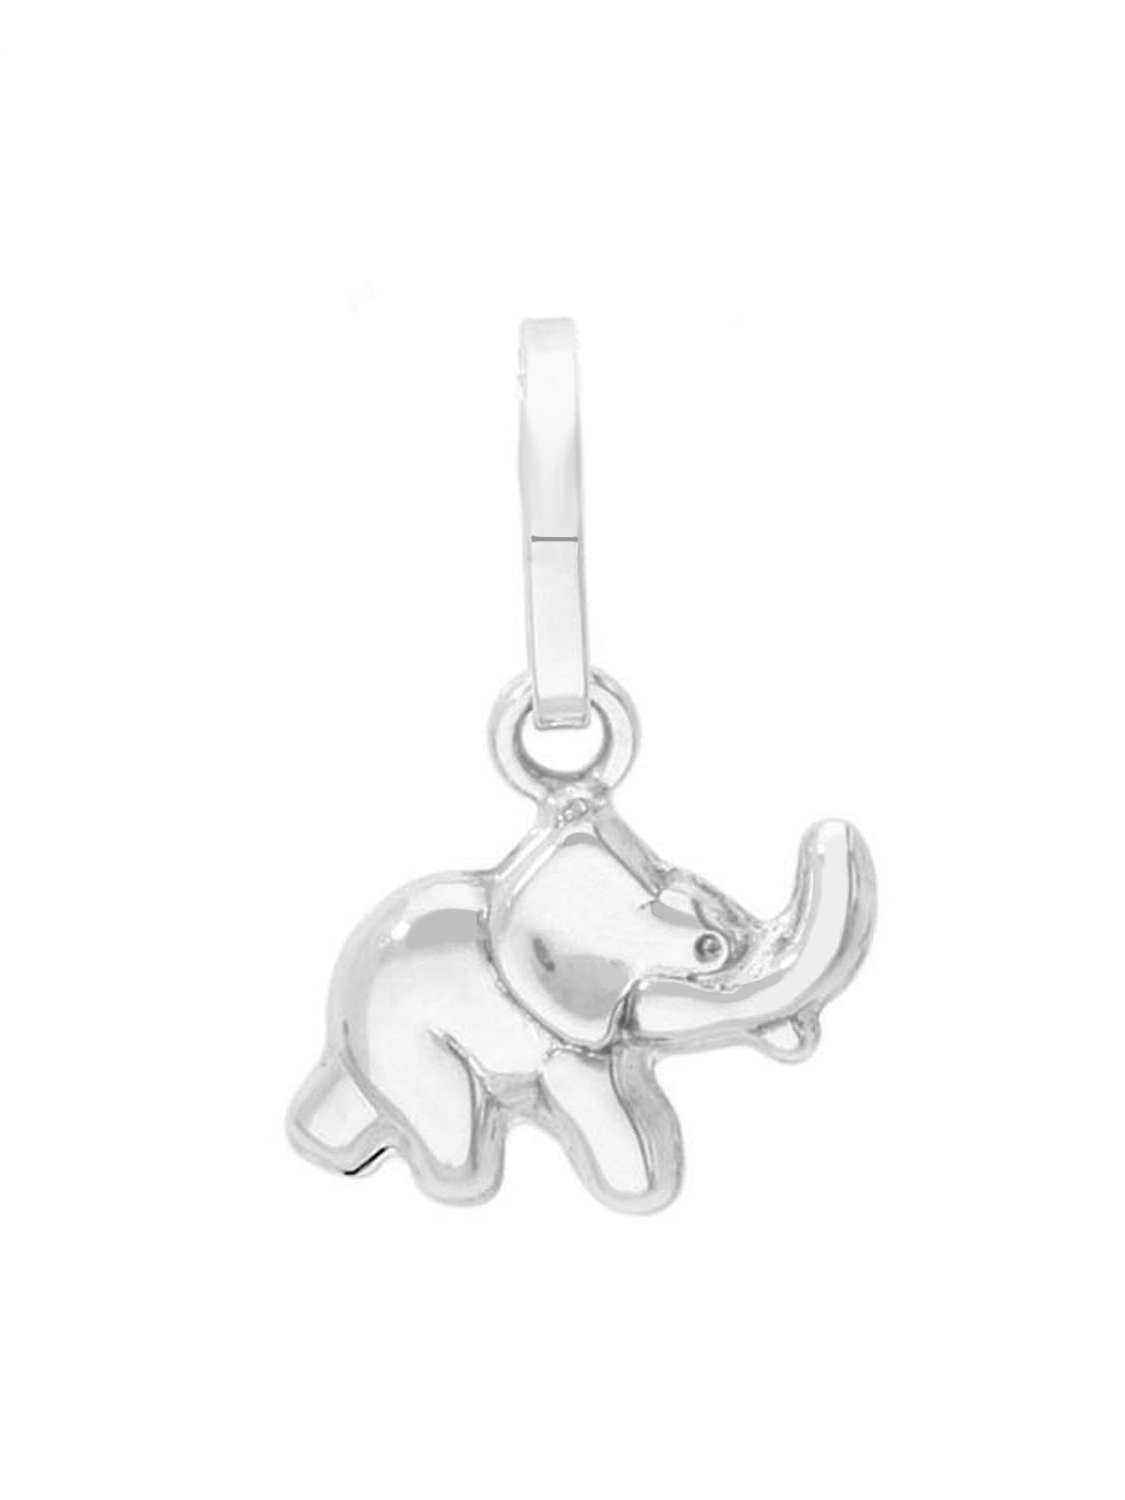 Picotee - Elefant Motivanhänger 925 Silber